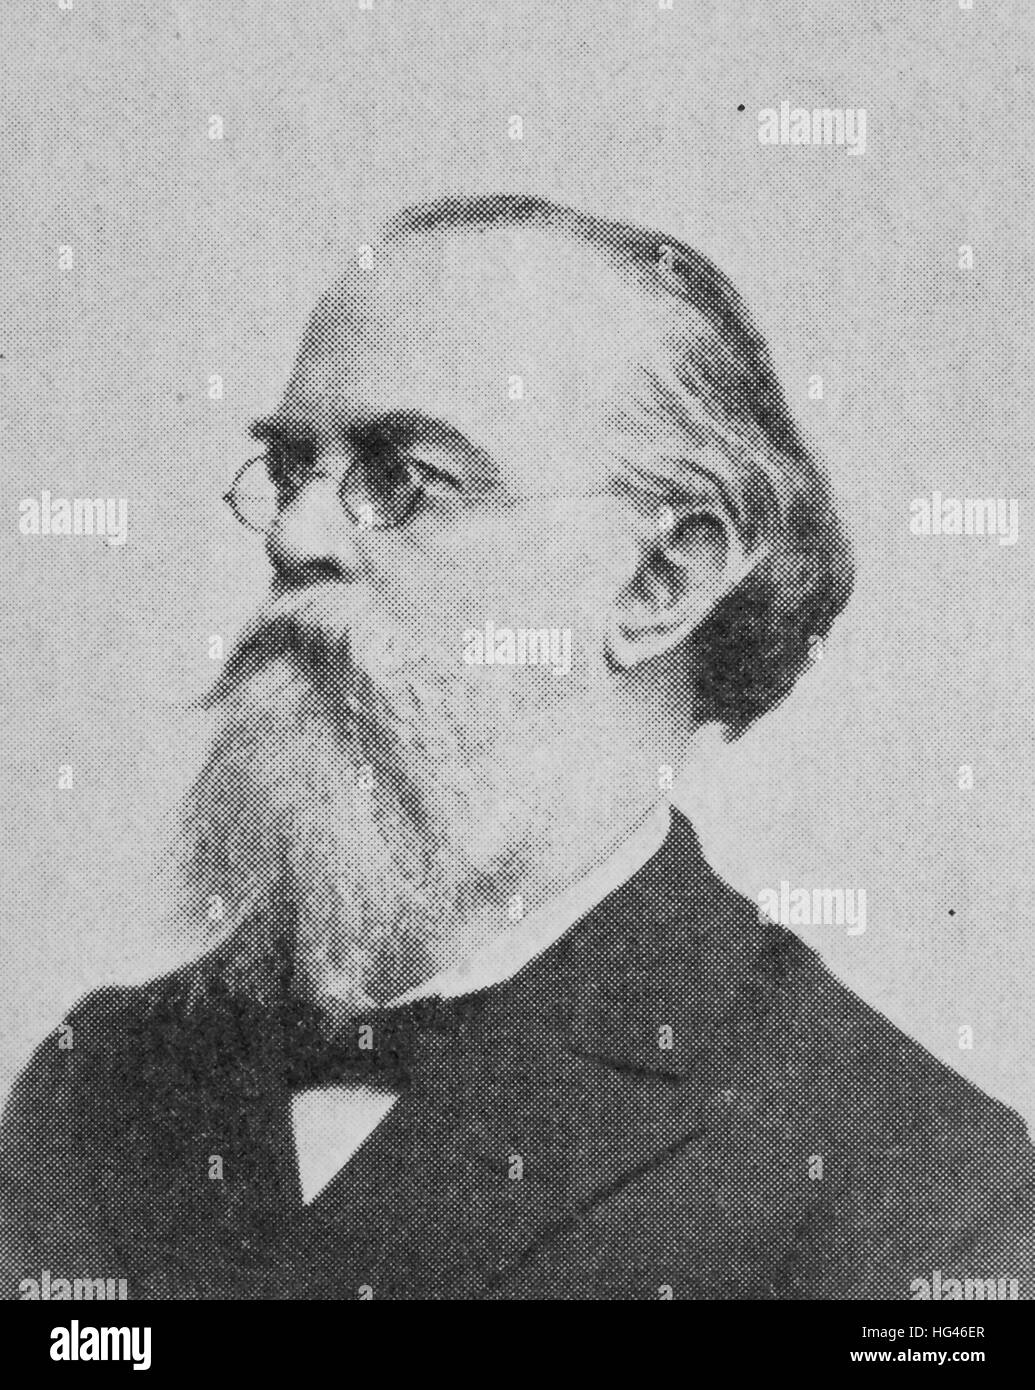 Gustav Anton Zeuner, war 30. November 1828 - 17. Oktober 1907, ein deutscher Physiker, Ingenieur und Erkenntnistheoretiker, als Begründer der technischen Thermodynamik und der Dresdner Schule der Thermodynamik, Reproduktion eines Fotos aus dem Jahr 1895, digital verbessert Stockfoto